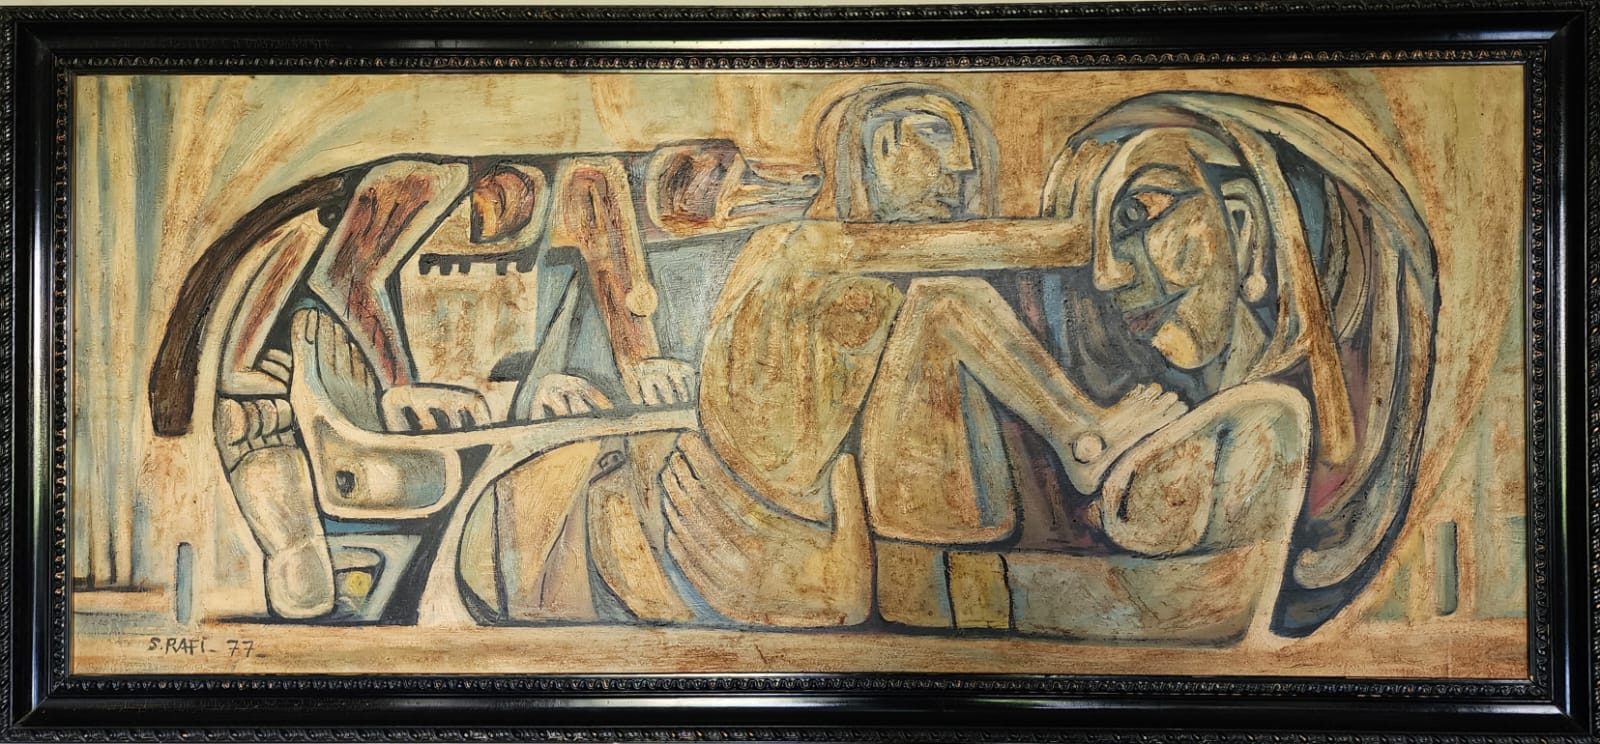 Samir Rafi (1926-2004), La belle et la bête (1977), Oil on wood, signed and dated, 170x60cm